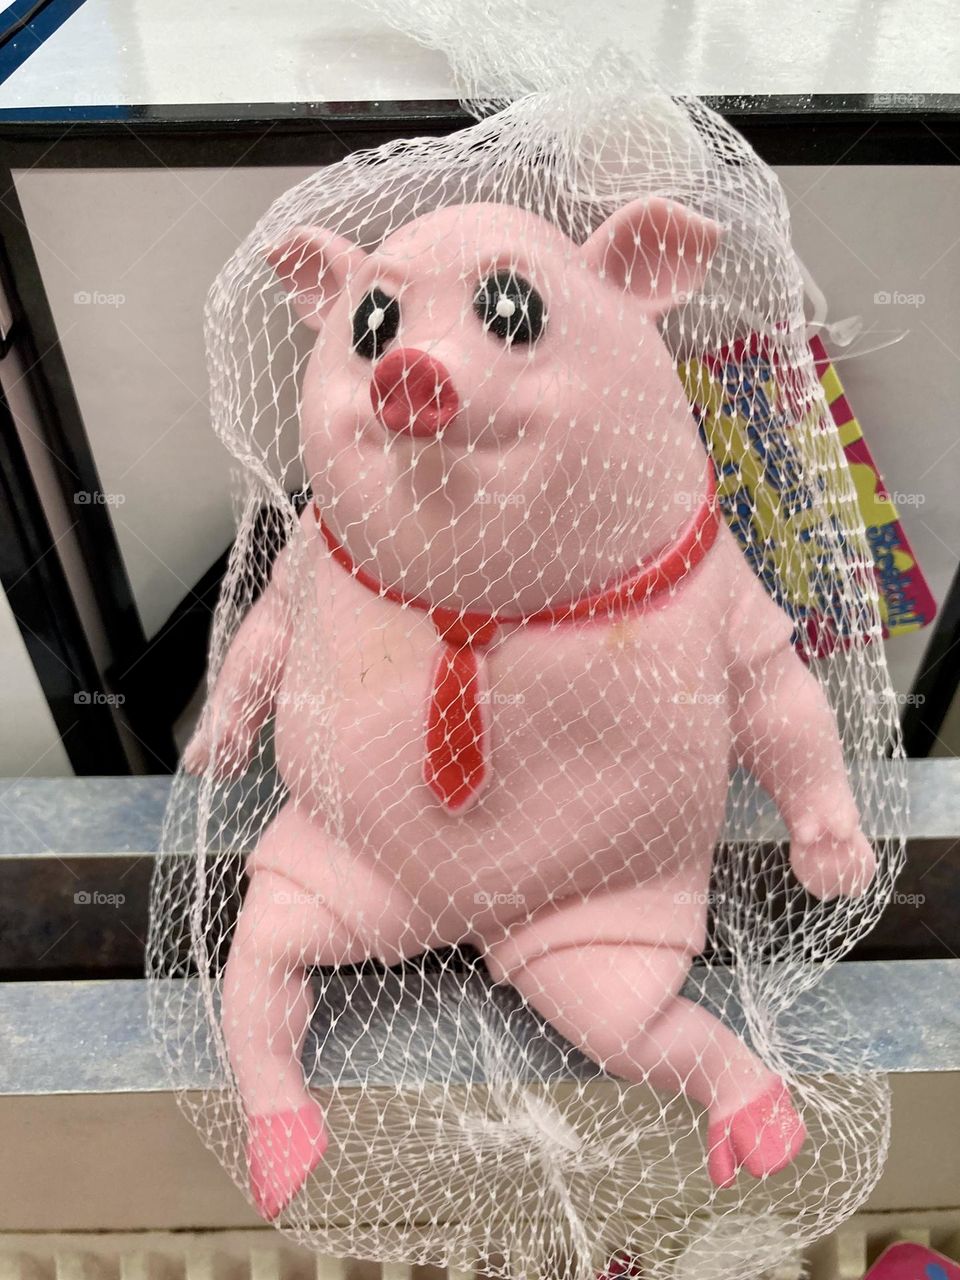 Strange pig toy in a tie 